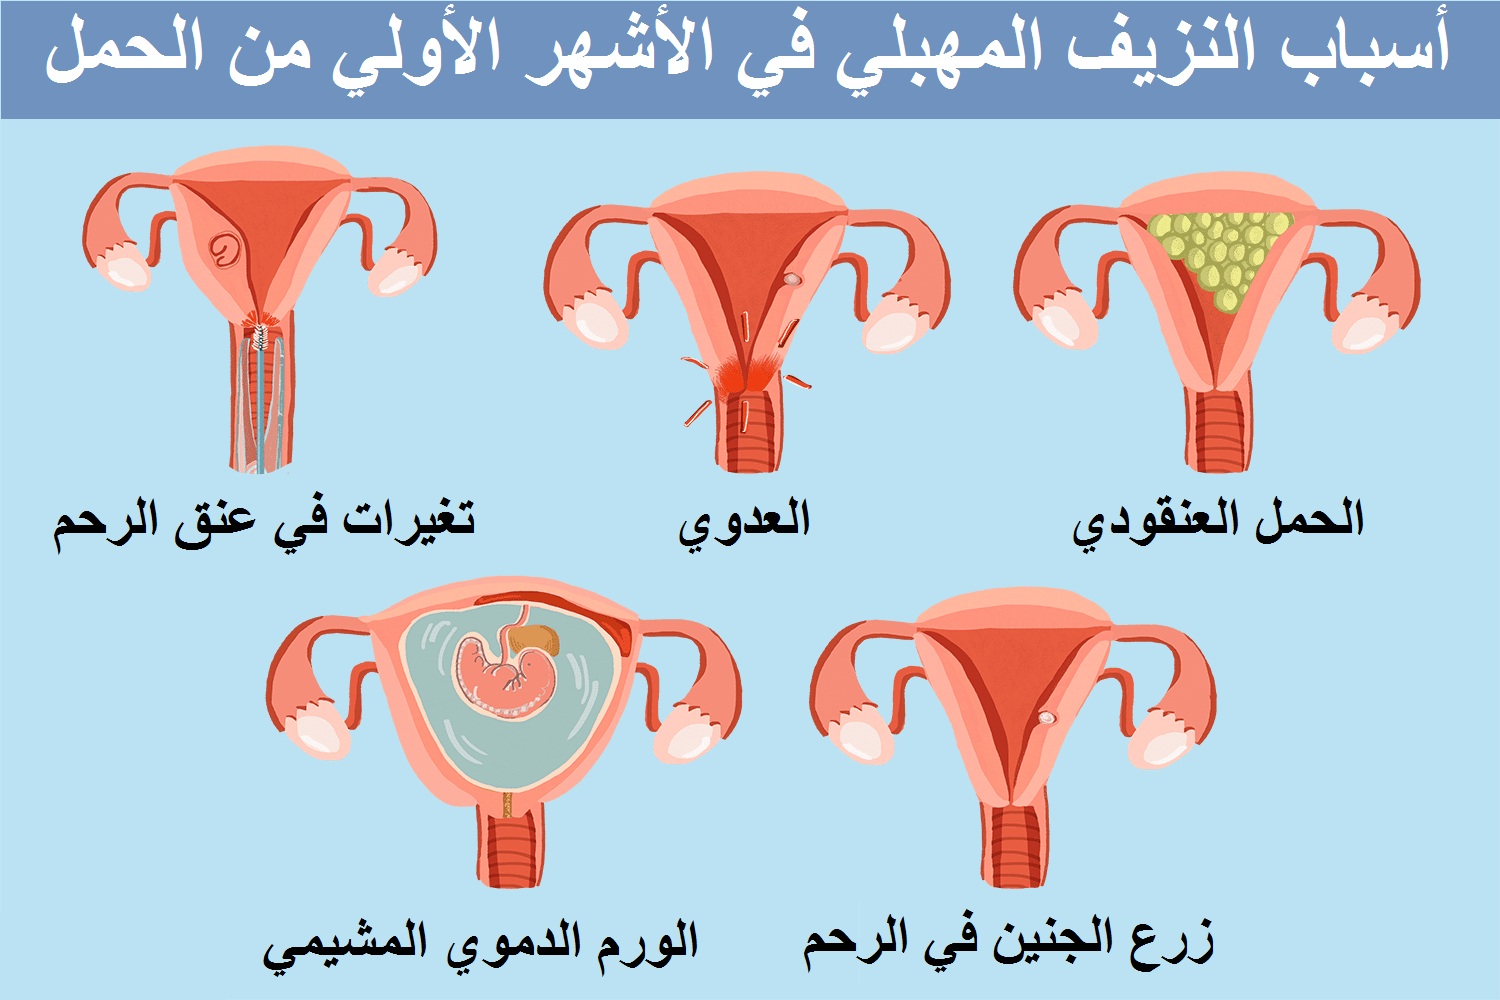 اسباب النزيف المهبلي للحامل فى الاشهر الاولي من الحمل